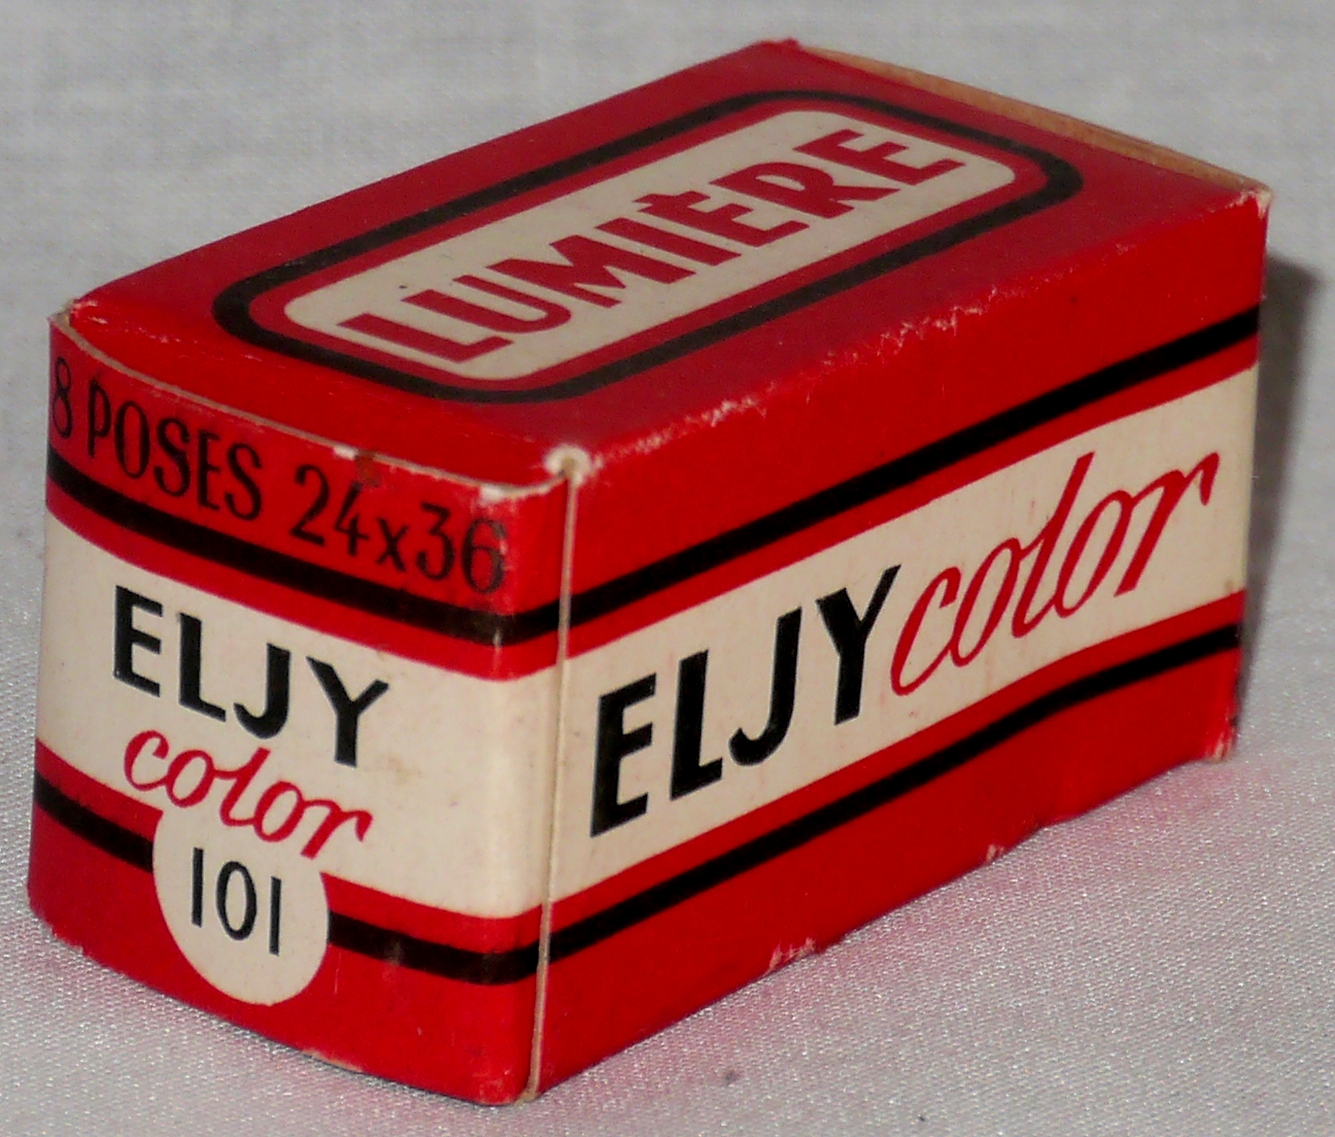 Eljy color n°101 - format 24x36 mm - 8 poses - expire en février 1956